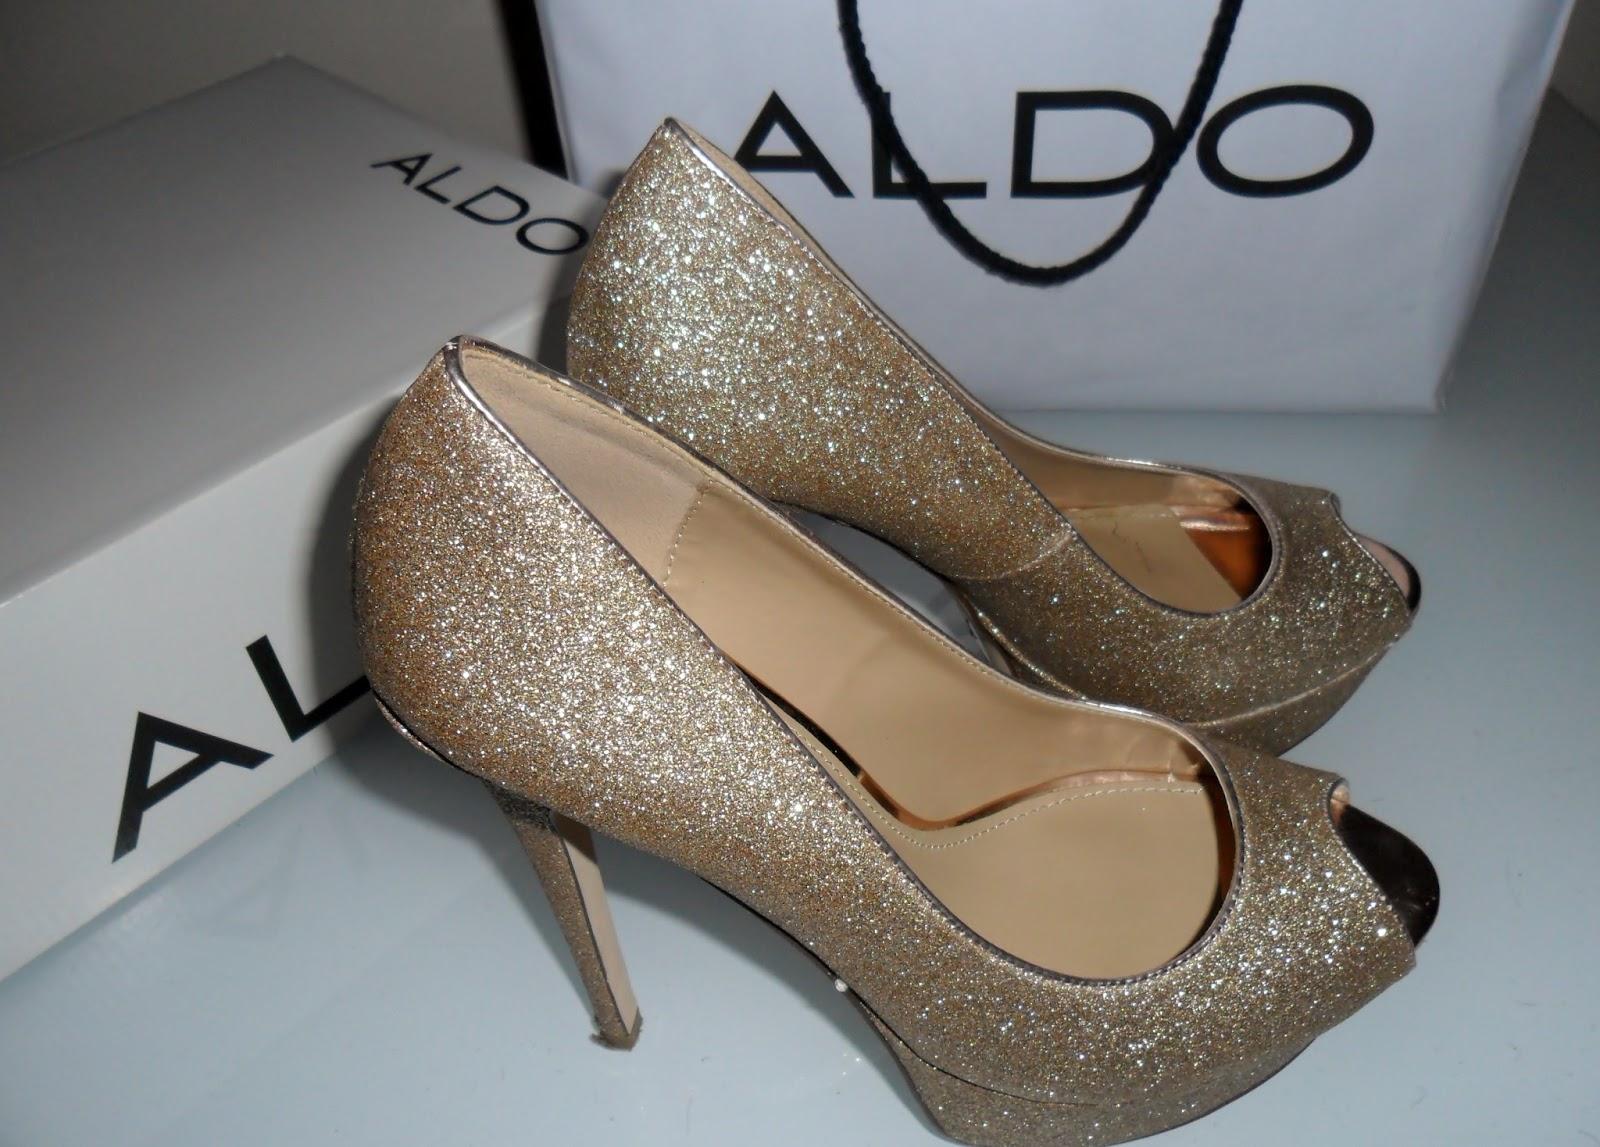 Aldo Shoes Review